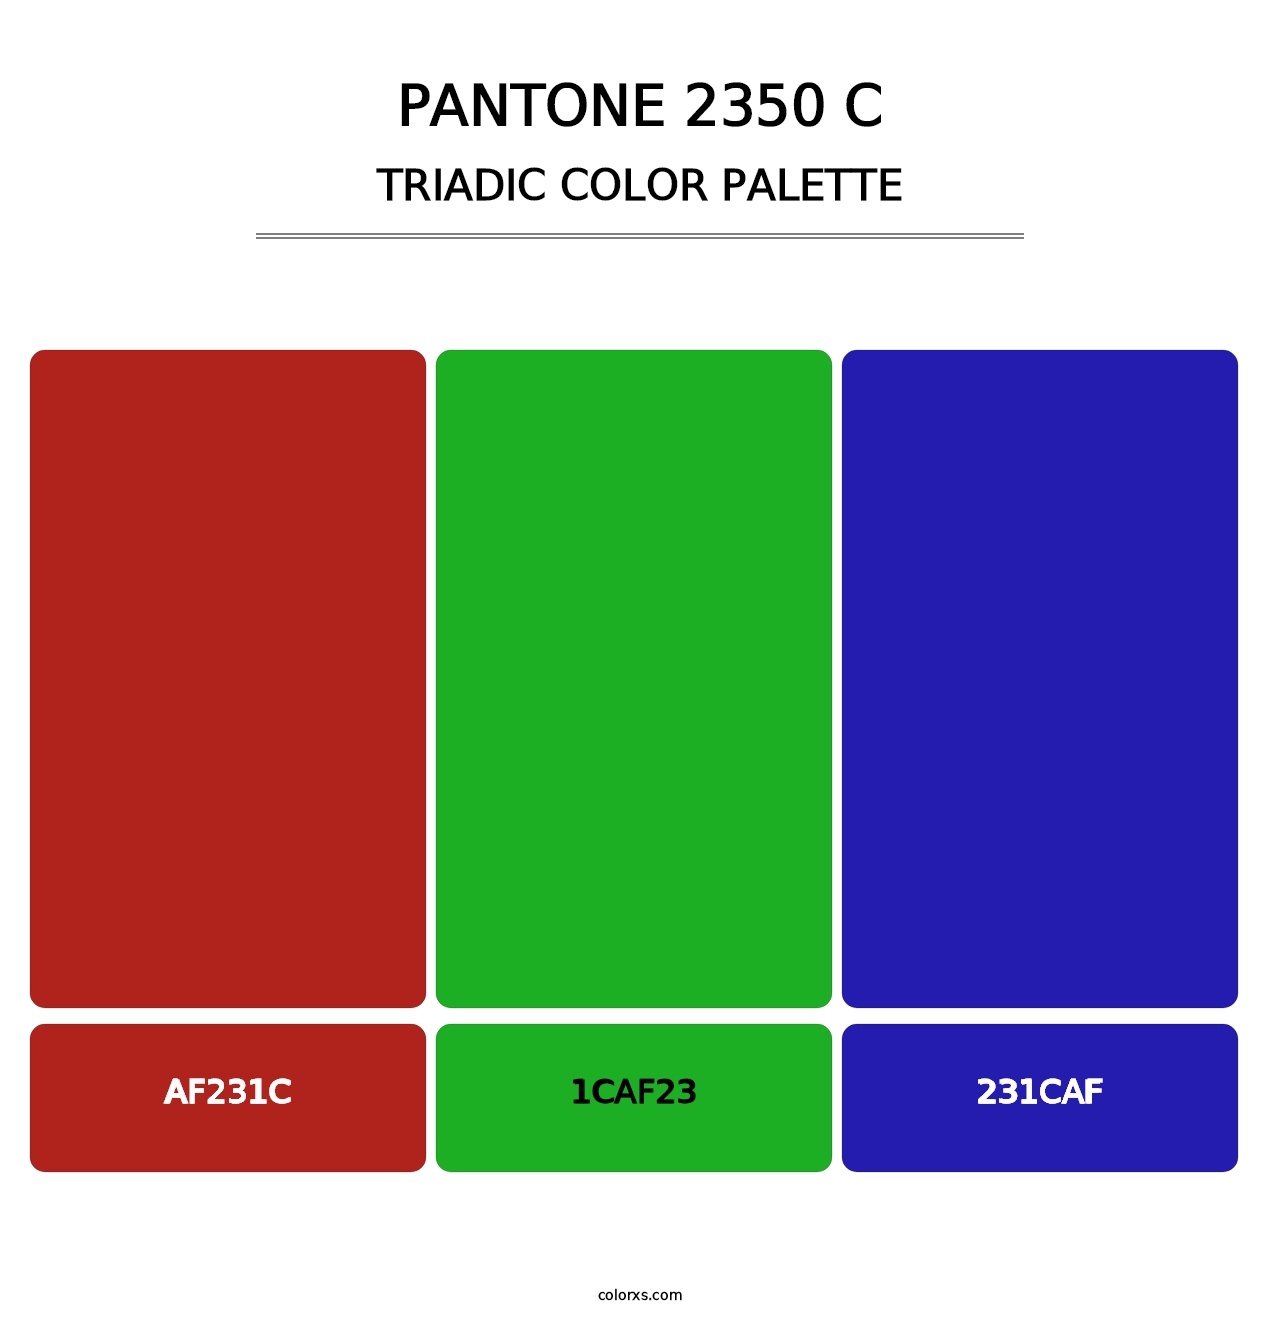 PANTONE 2350 C - Triadic Color Palette